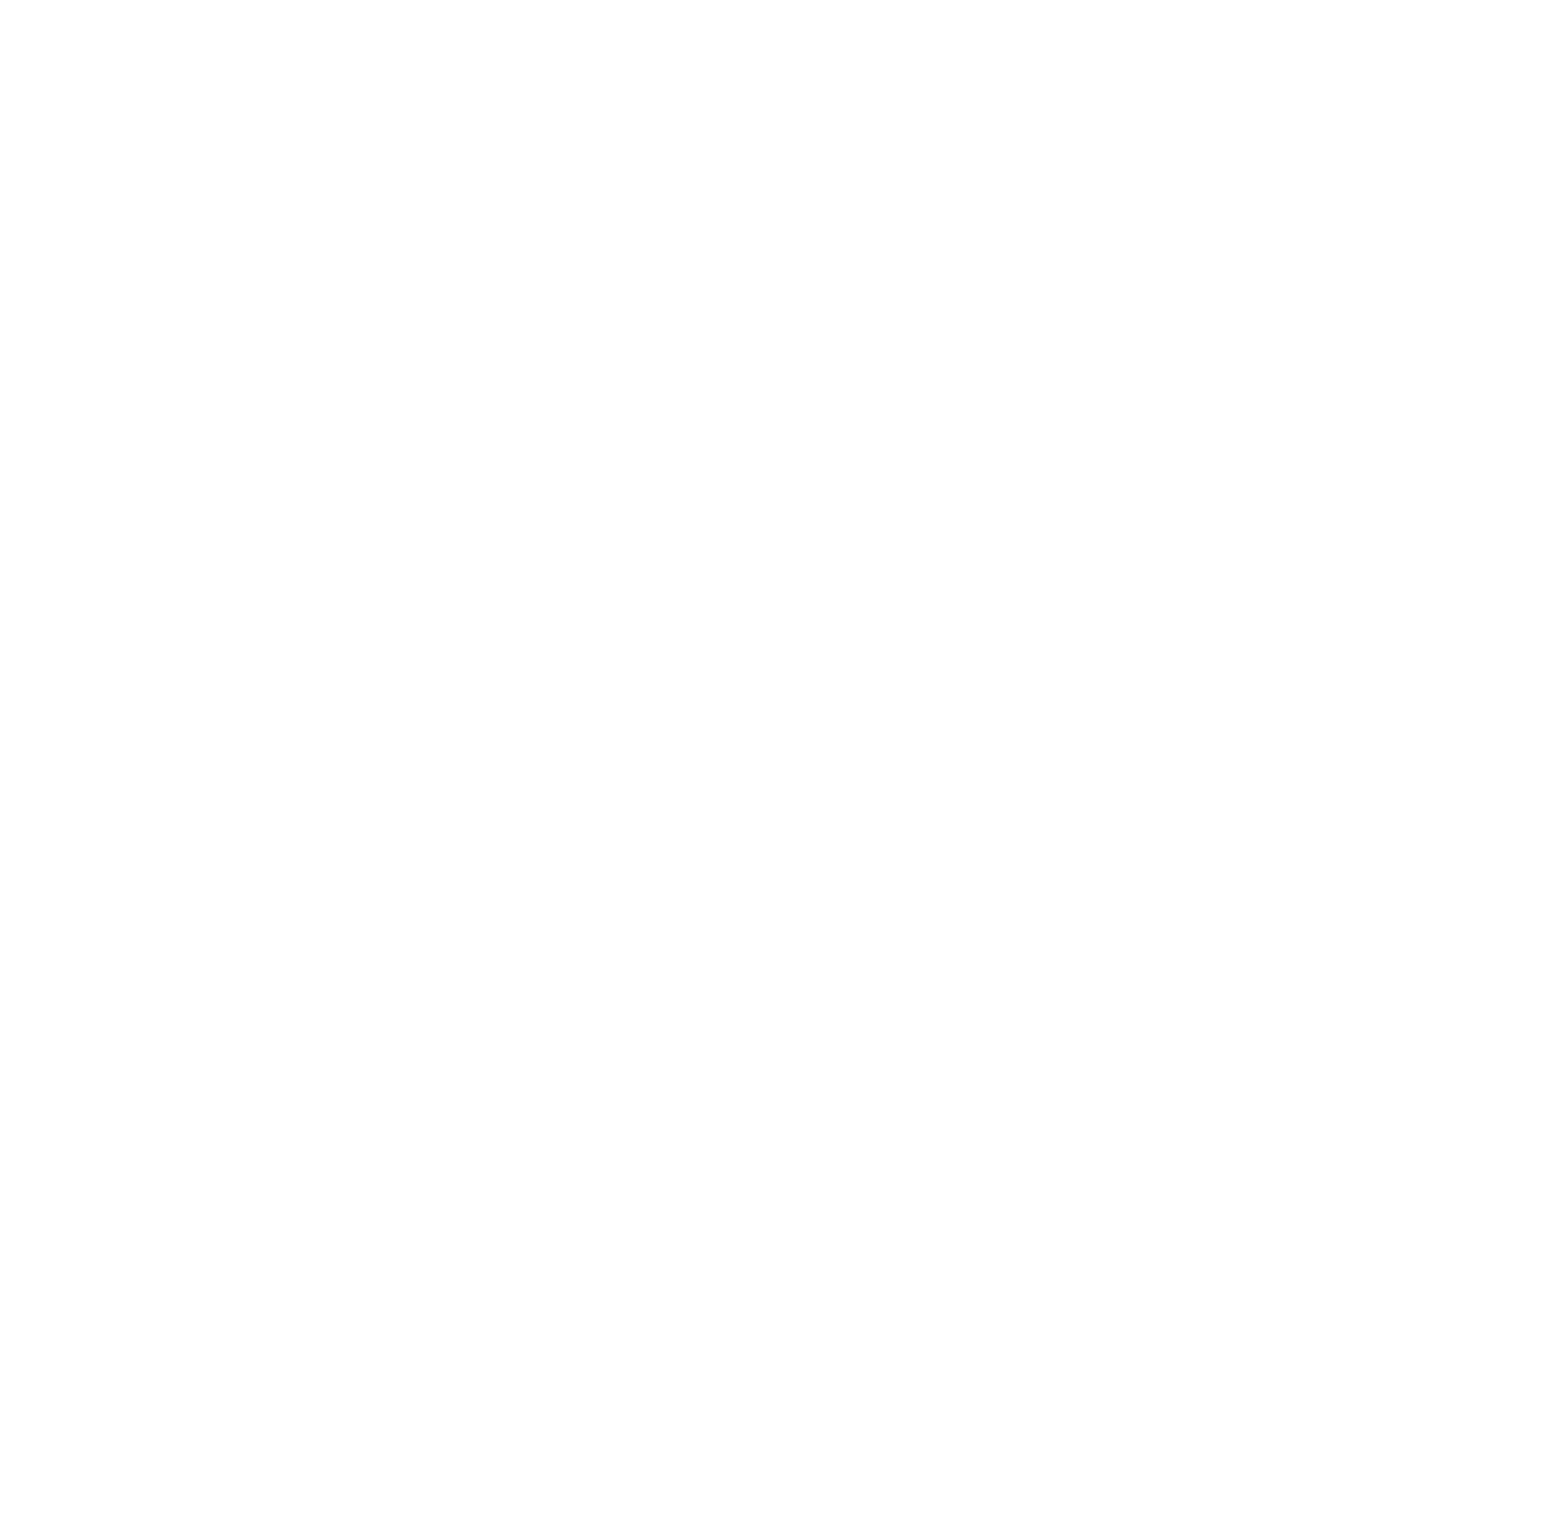 Prosus logo grand pour les fonds sombres (PNG transparent)